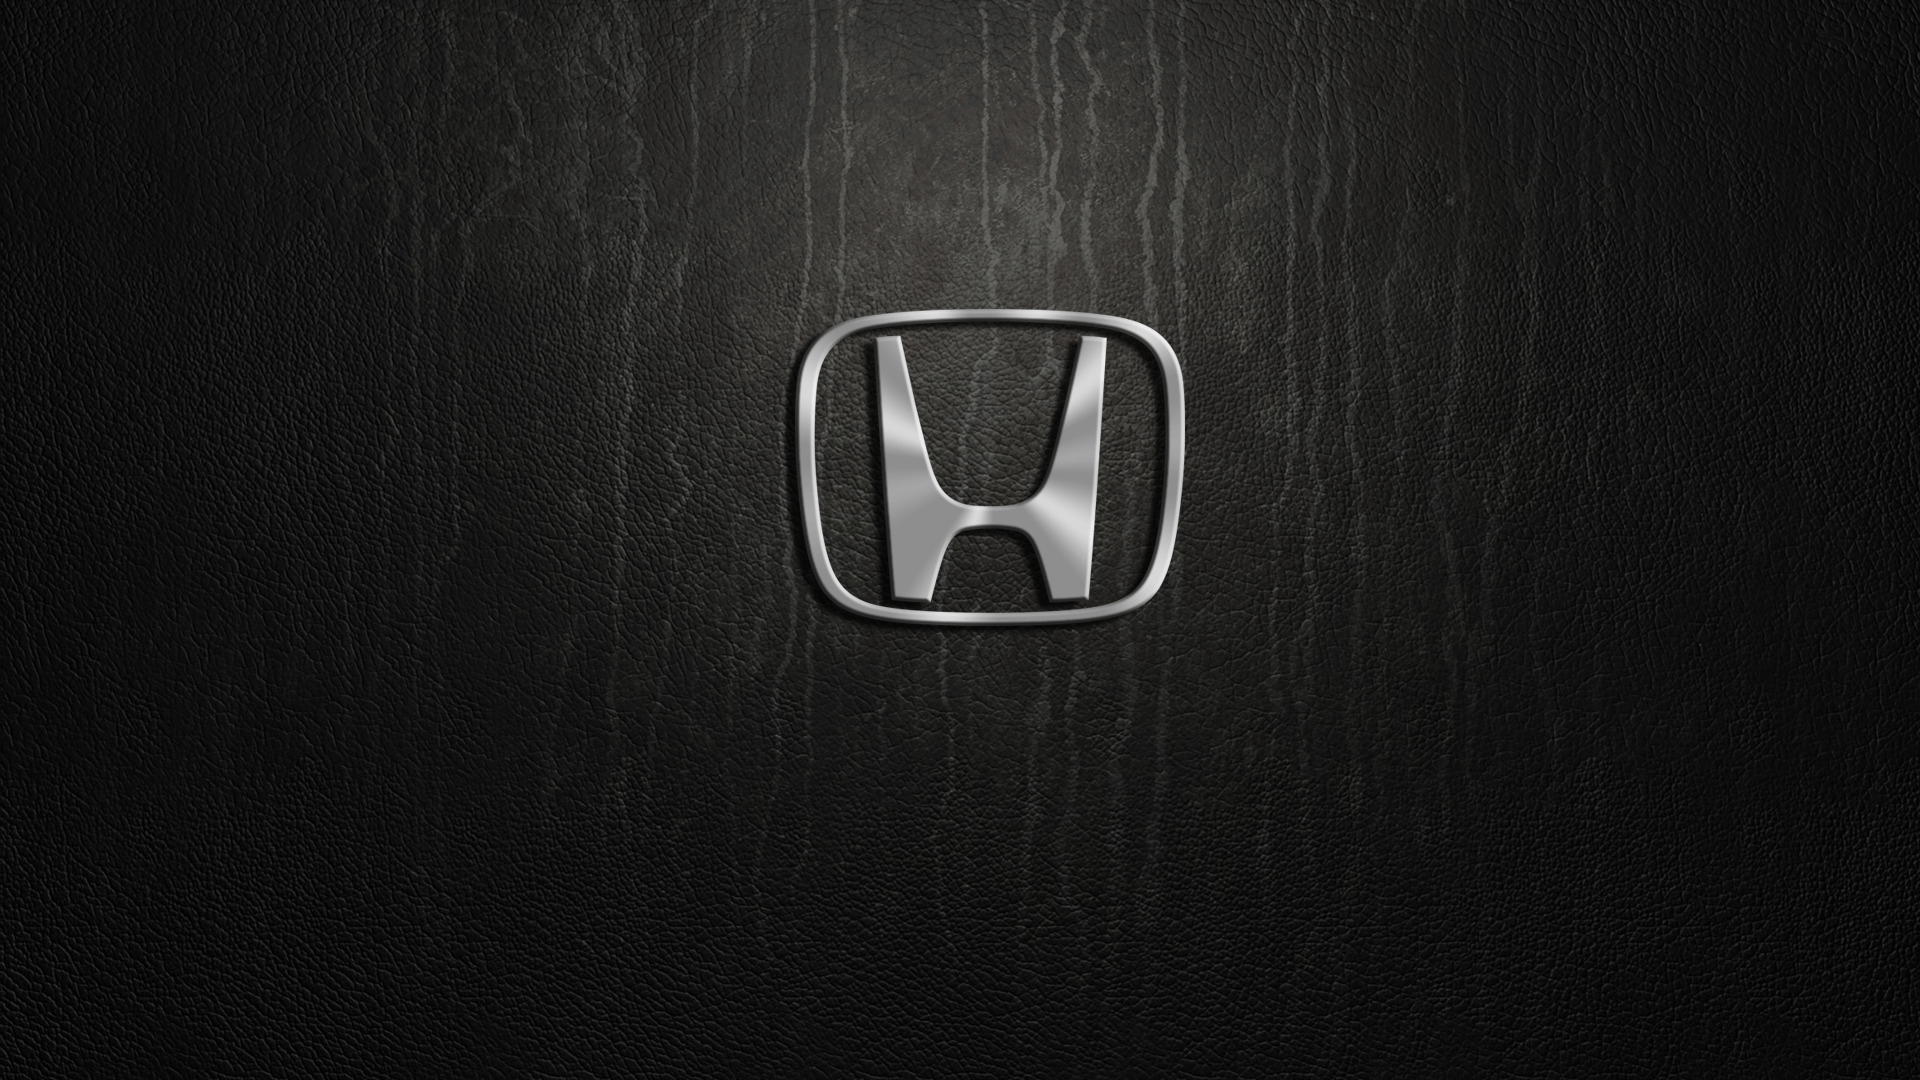 Honda Logo Wallpaper 20816 1920x1080.com. Best Games